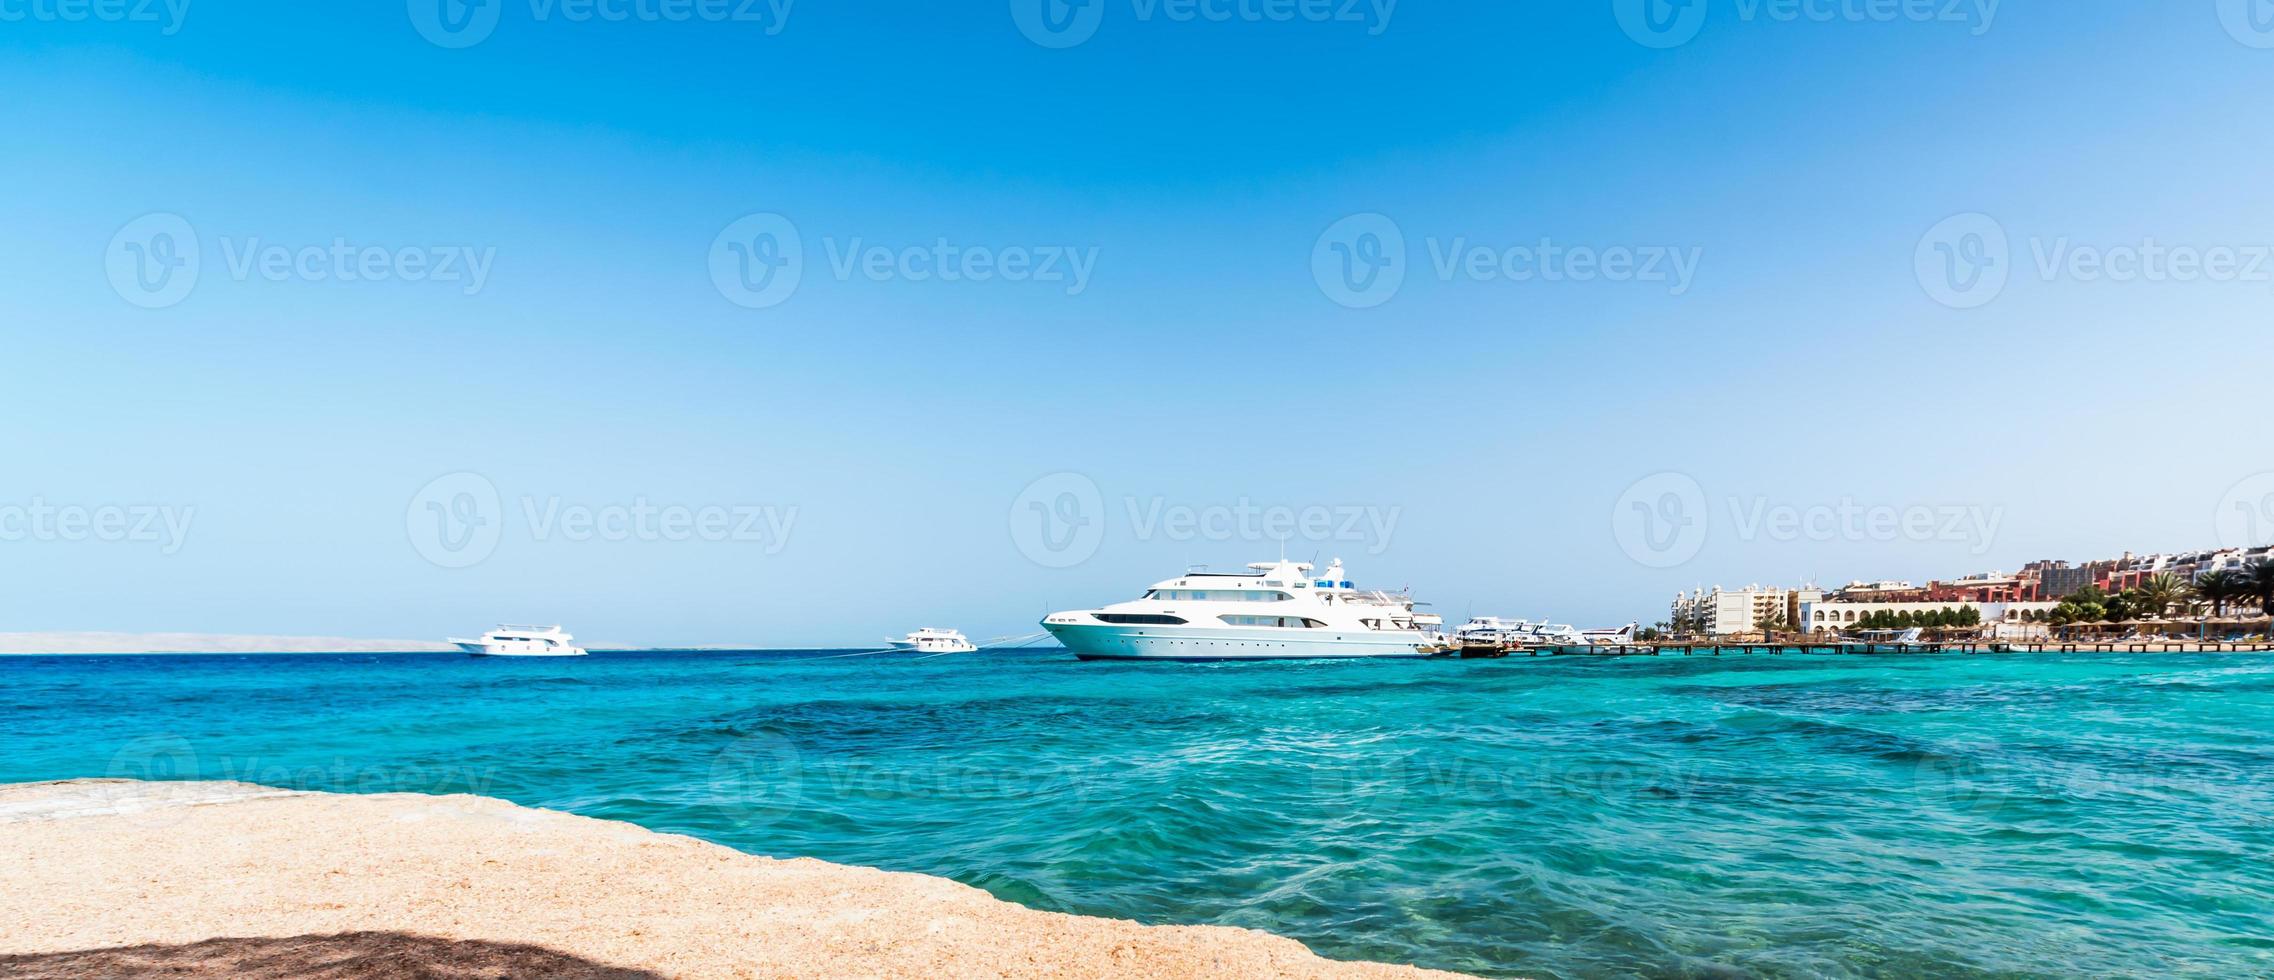 vista panorâmica de navios no mar vermelho e um hotel na costa foto